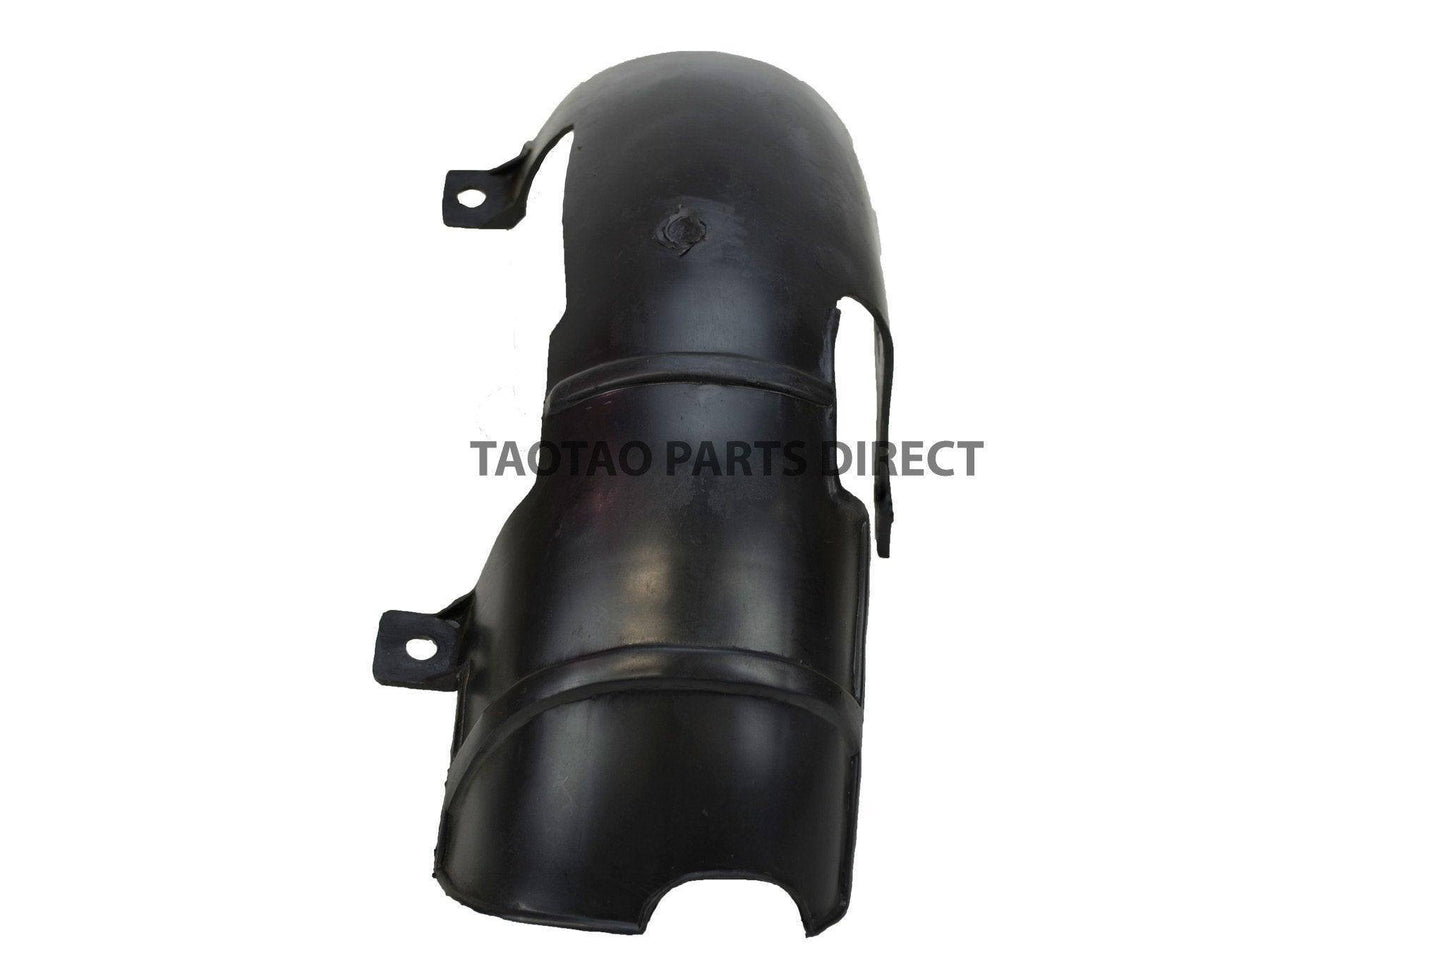 CY50A Rear Mud Flap - TaoTao Parts Direct